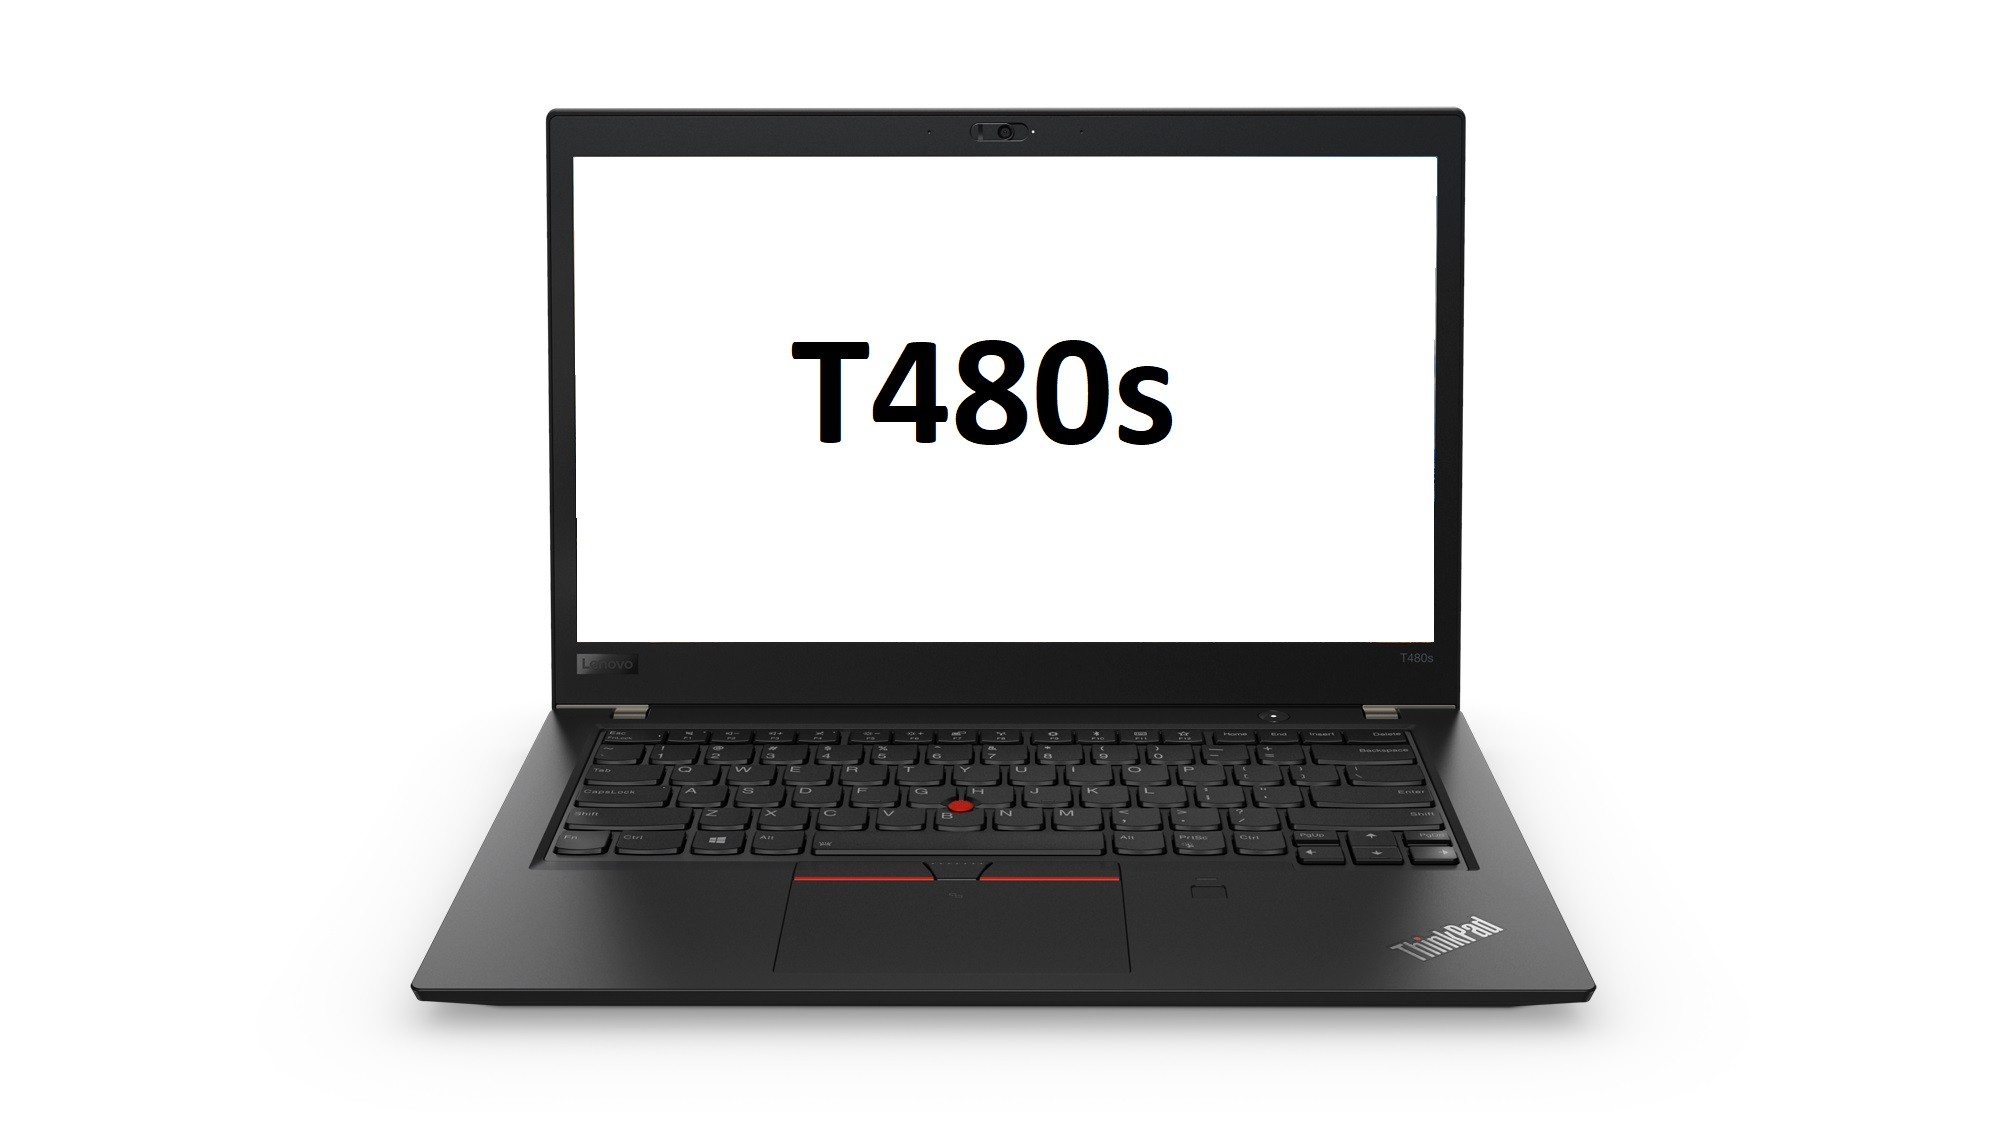 Lenovo Thinkpad T480s 14" FHD i7-8550U 1.8GHz 16GB 256GB SSD W10P Laptop 